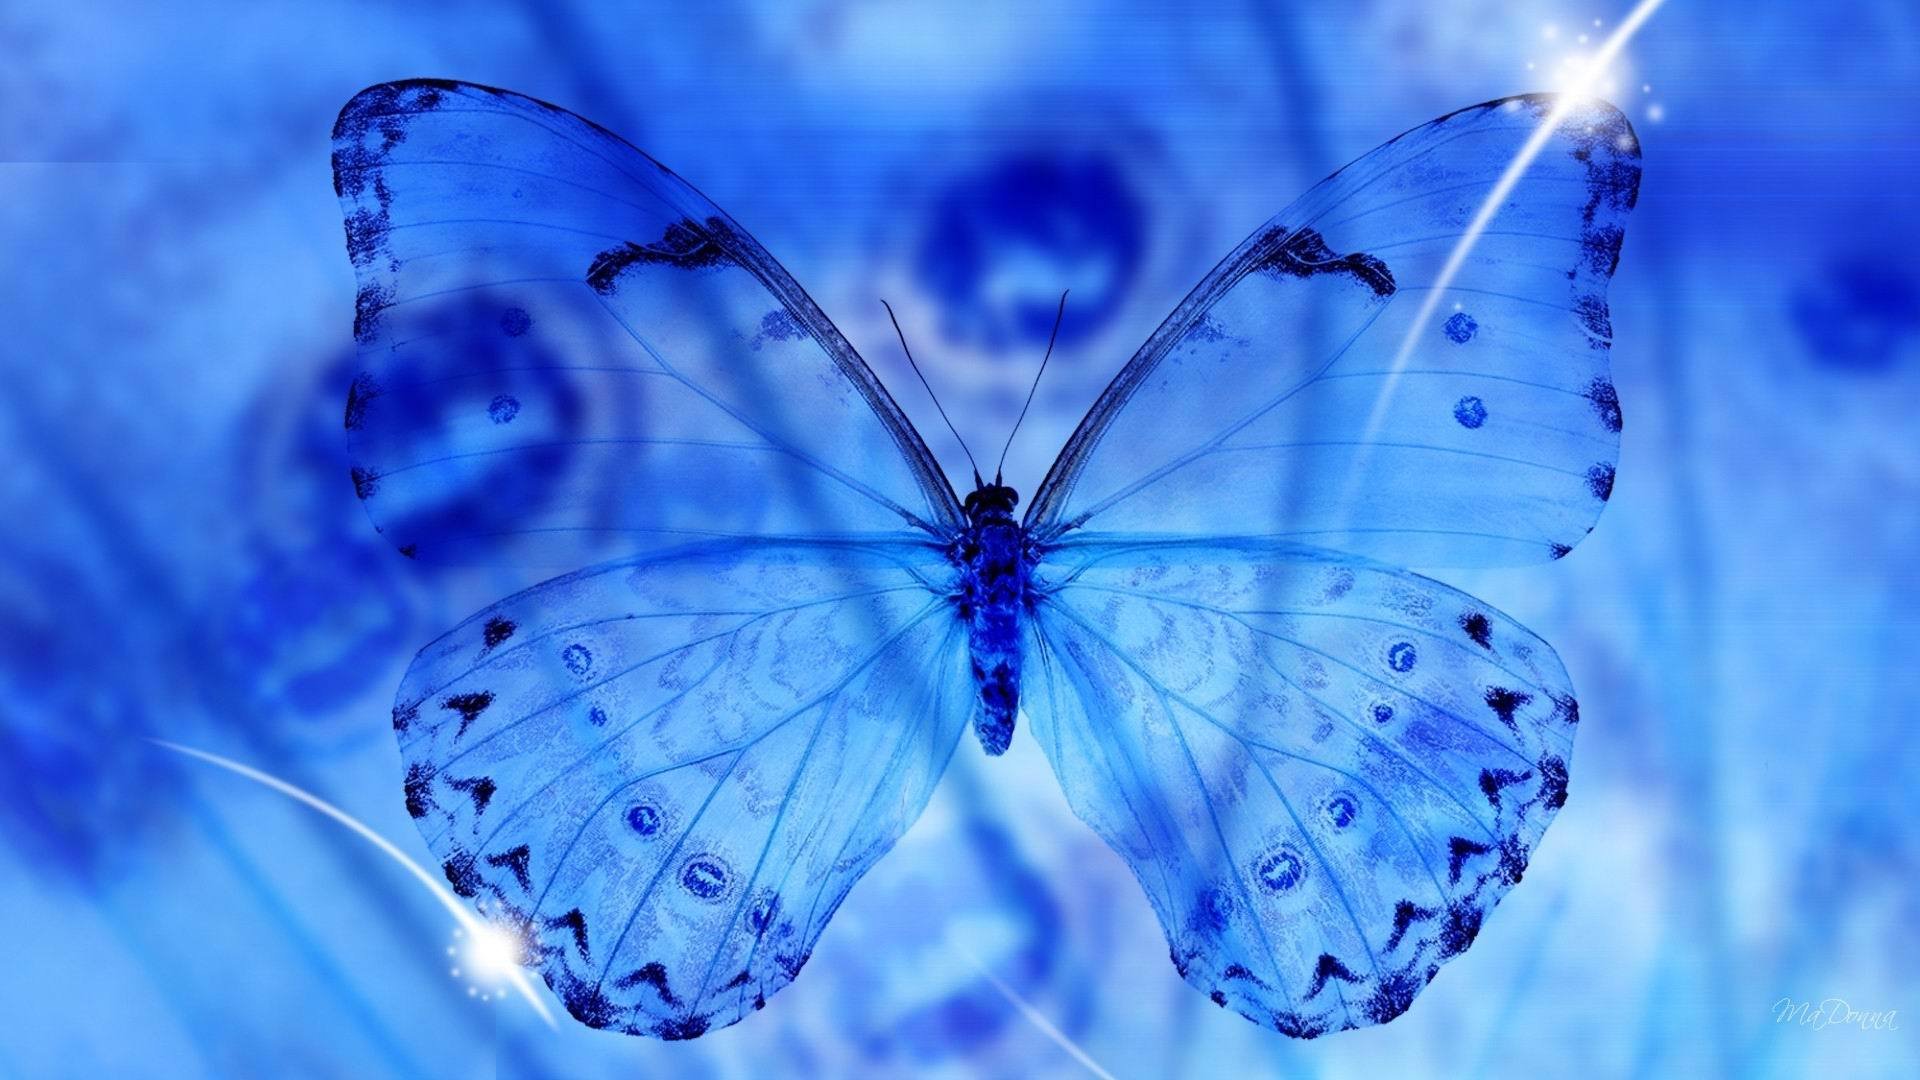 Обои на стол бабочки. Голубая бабочка. Картинки на рабочий стол бабочки. Синяя бабочка. Заставка на рабочий стол бабочки.